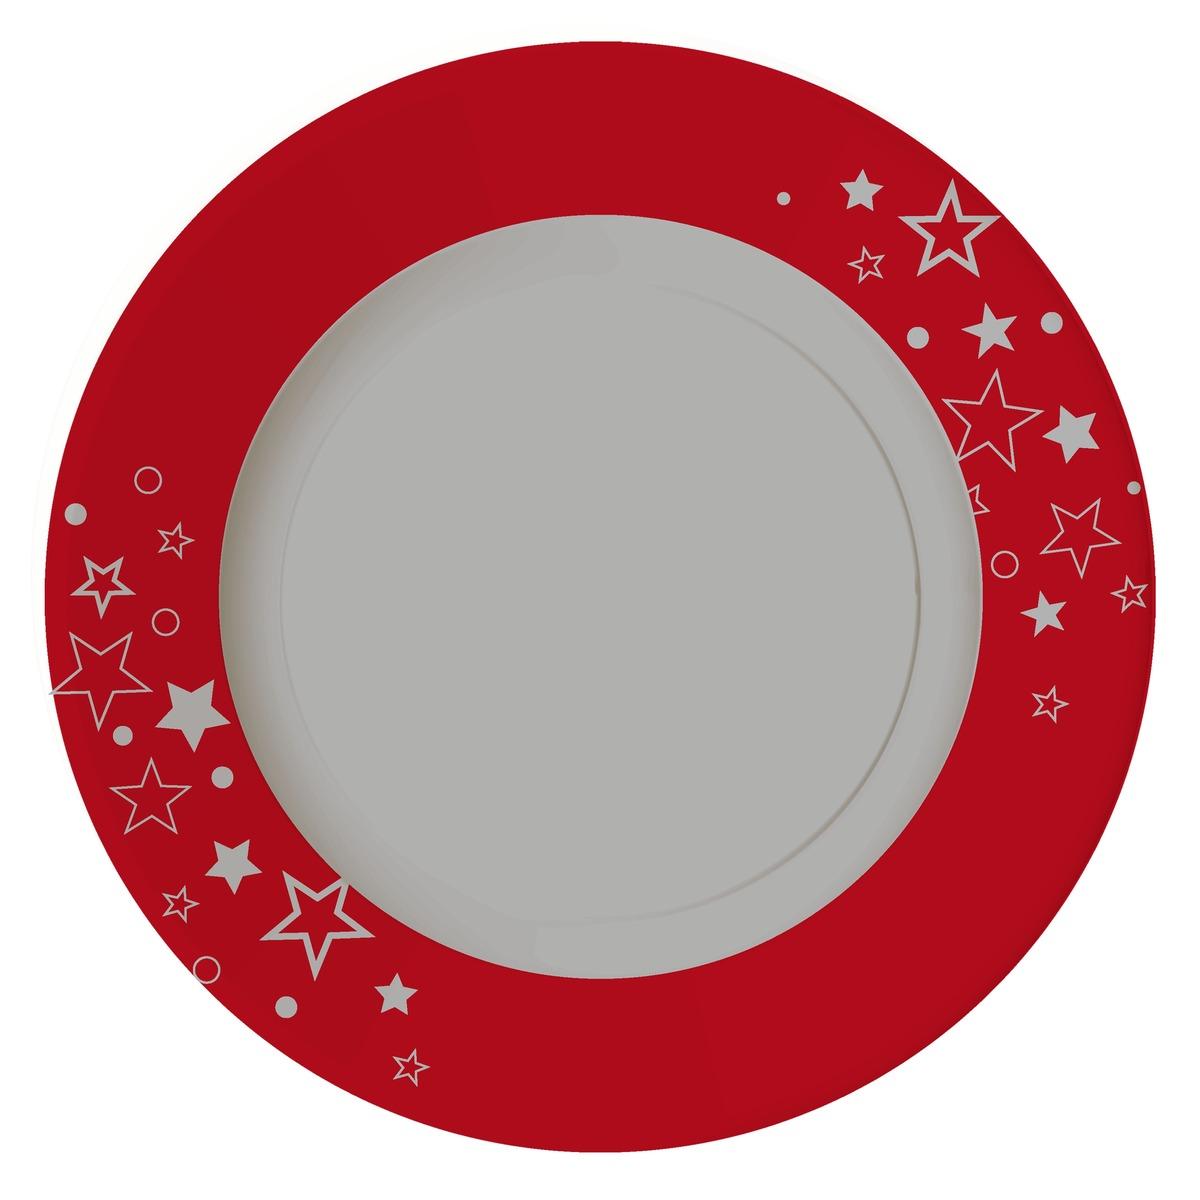 Lot de 10 assiettes rondes en carton - Diamètre 23 cm - Rouge, Blanc